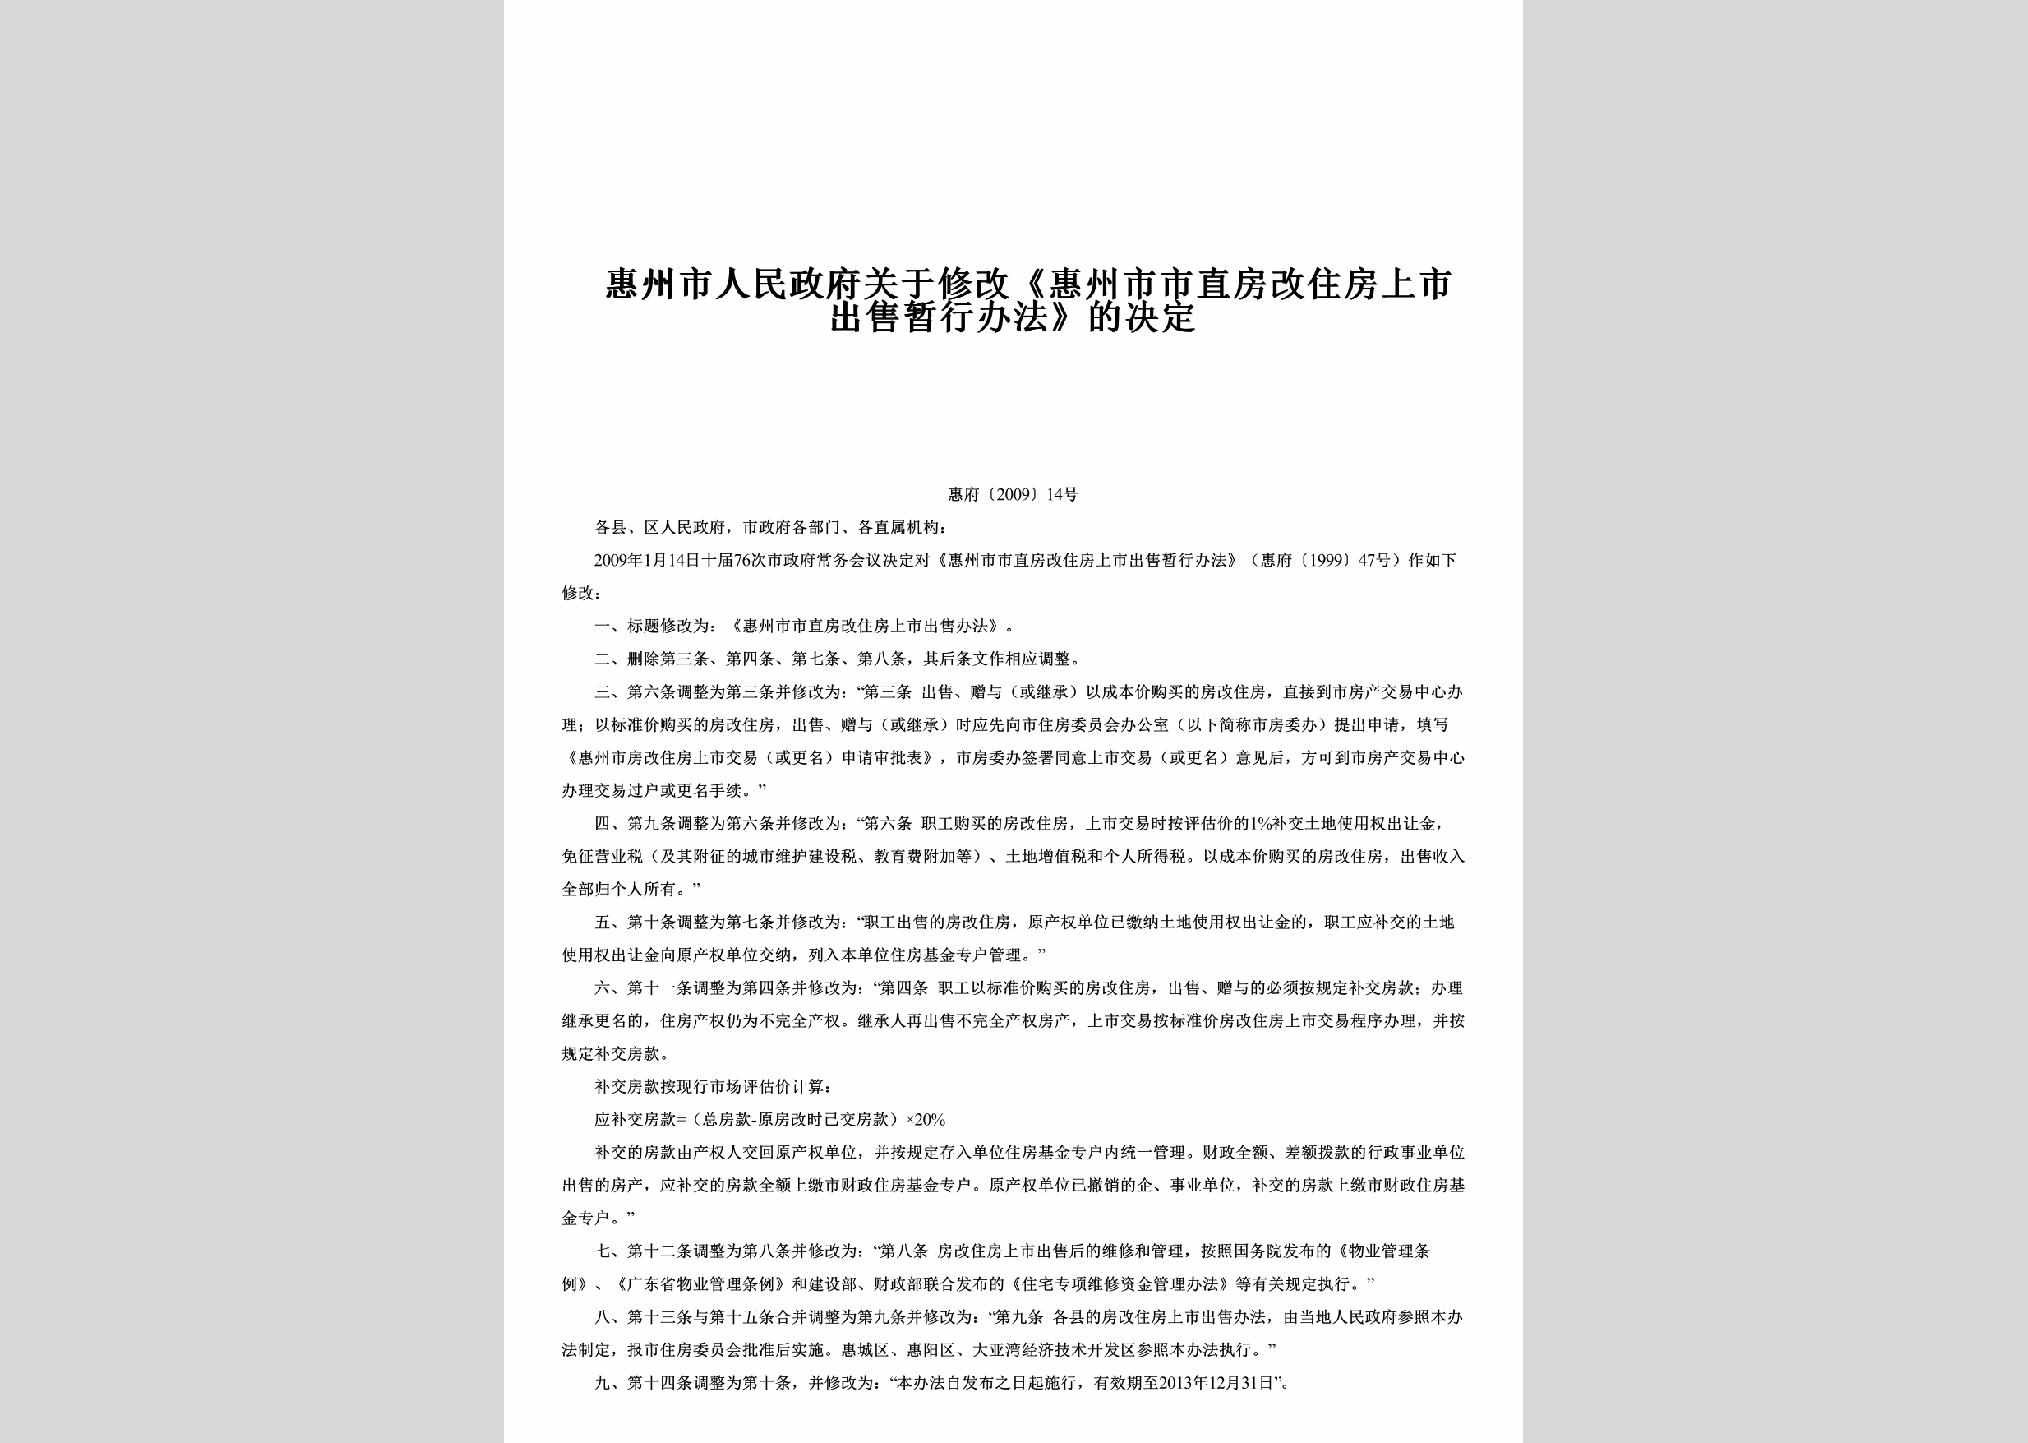 惠府[2009]14号：关于修改《惠州市市直房改住房上市出售暂行办法》的决定